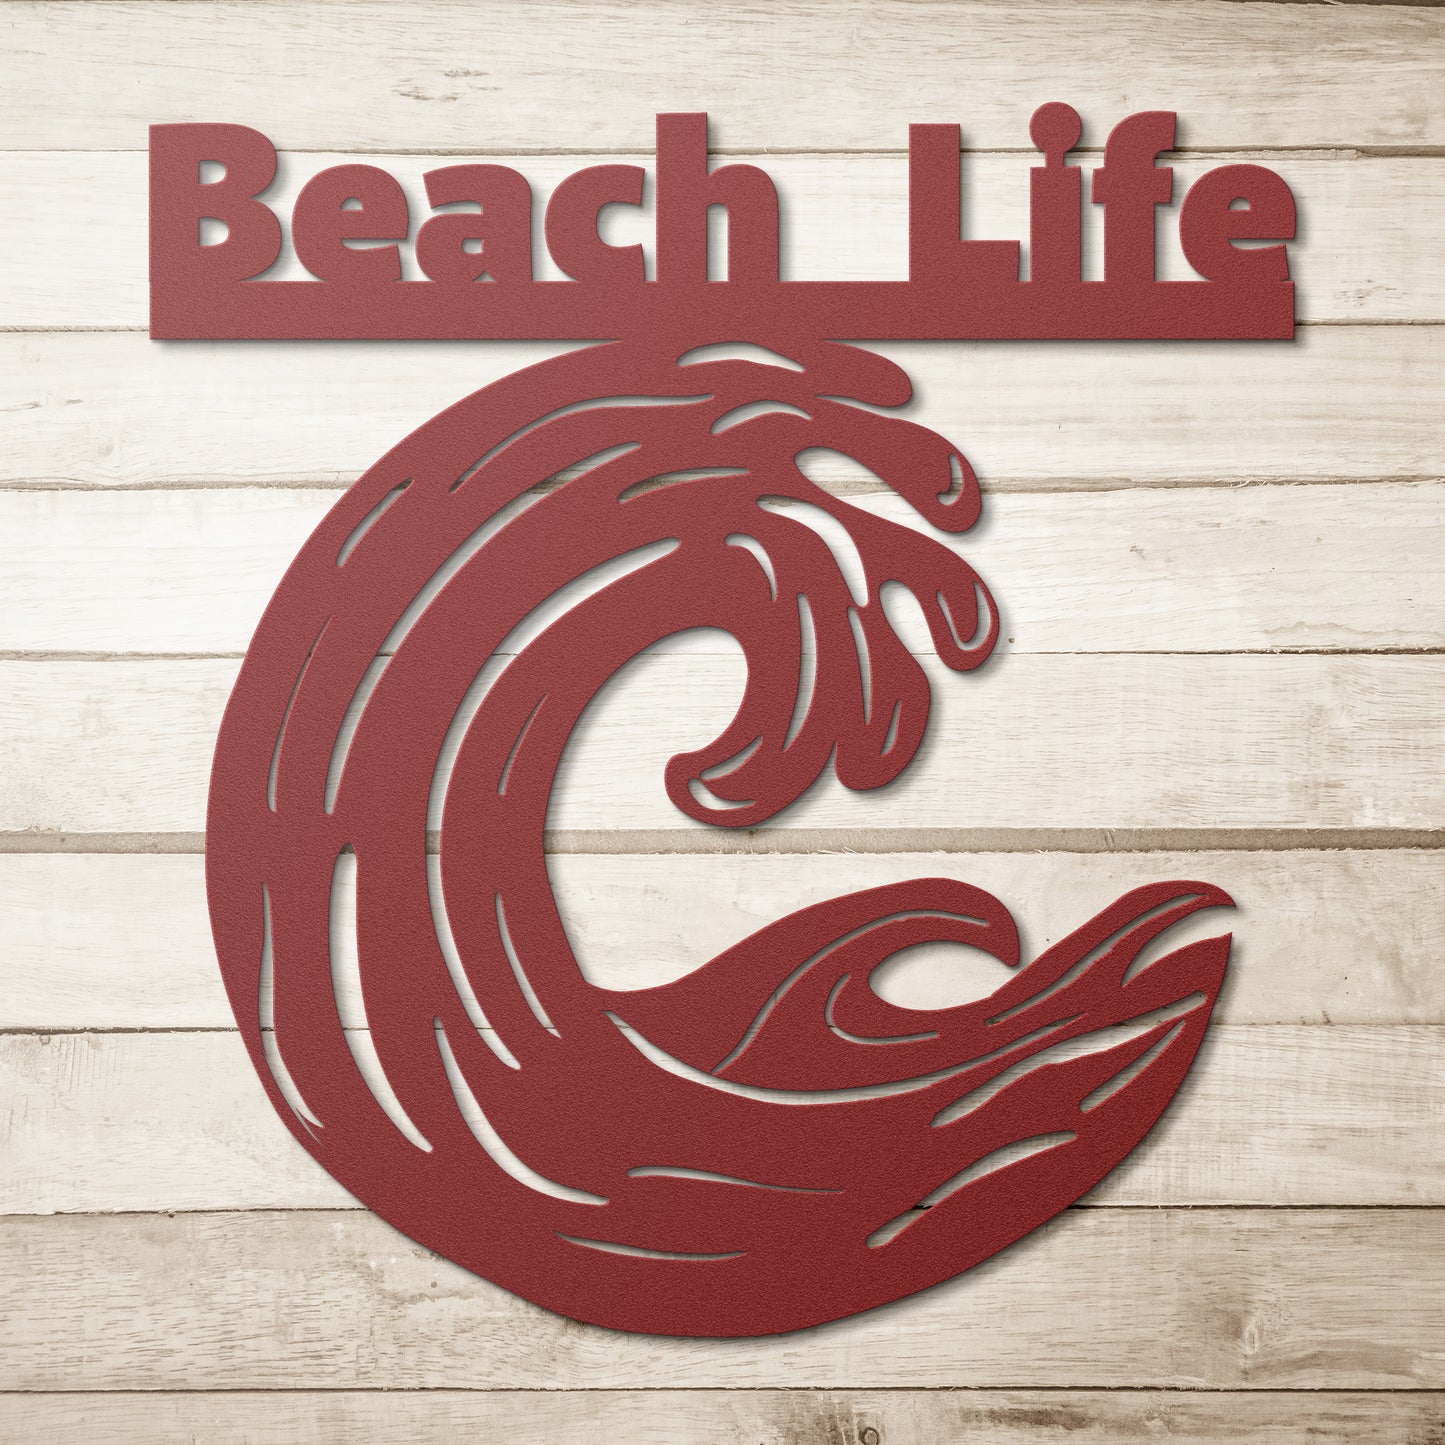 Metal Sign- Beach Life with Wave- Indoor/Outdoor Metal Sign